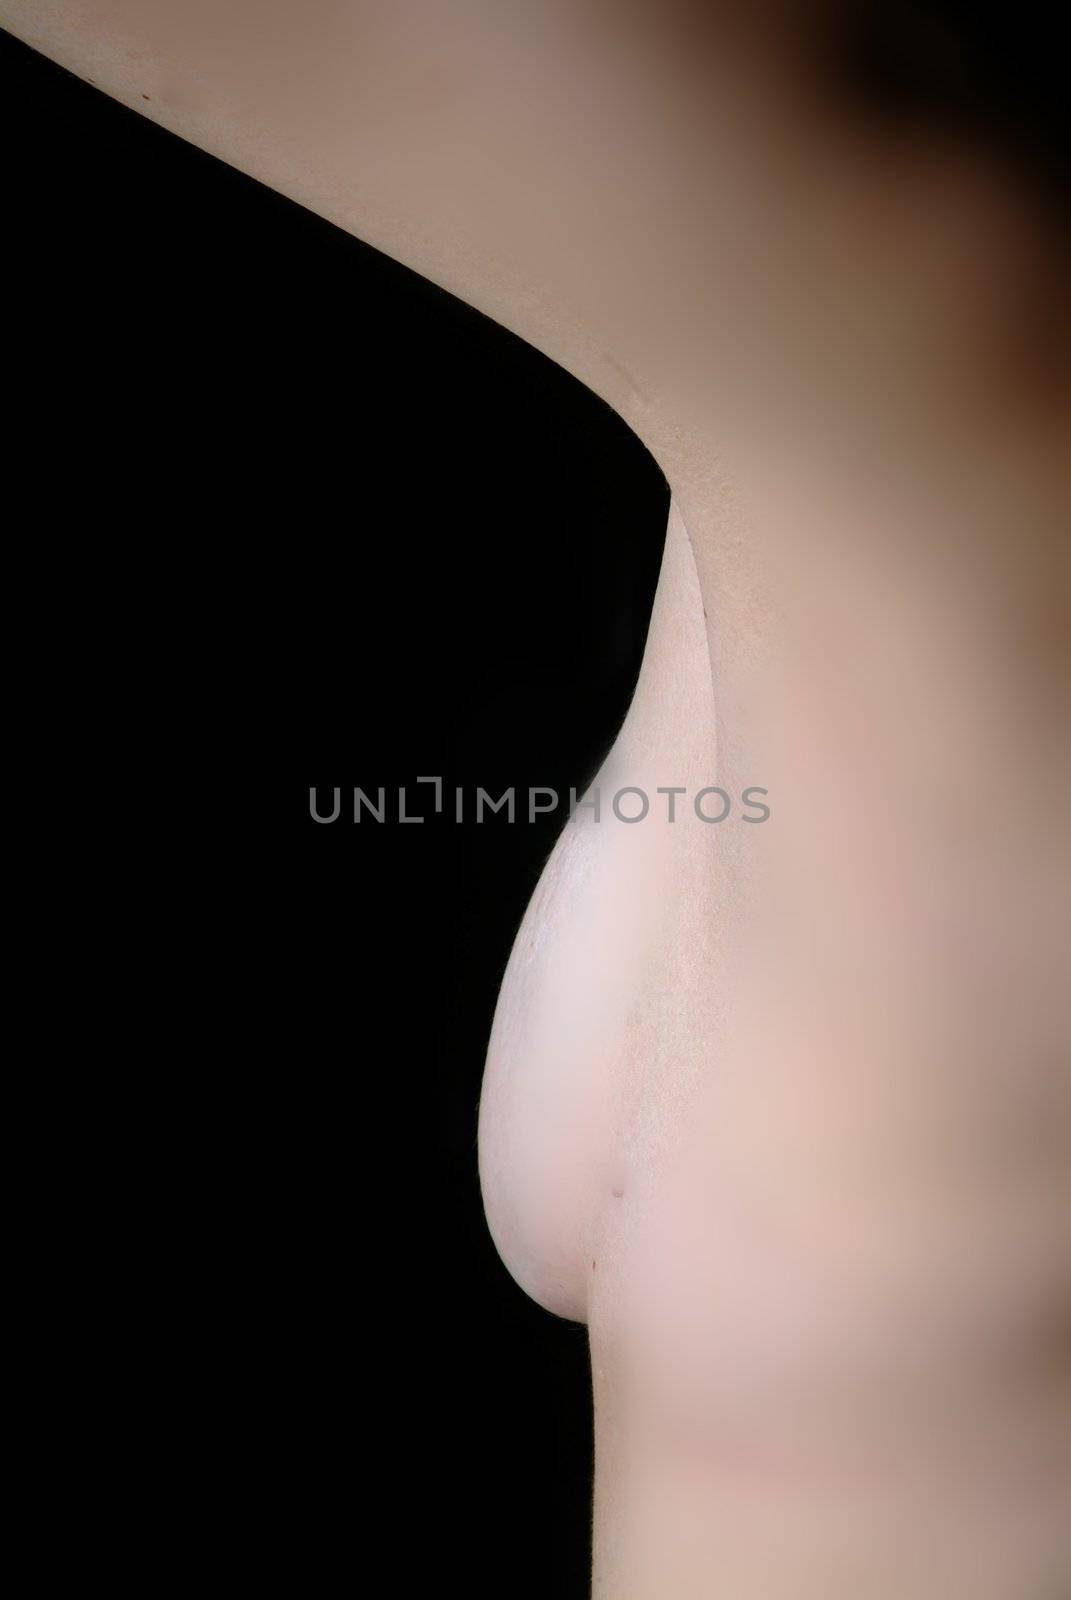 busen halb | half breast  by fotofritz